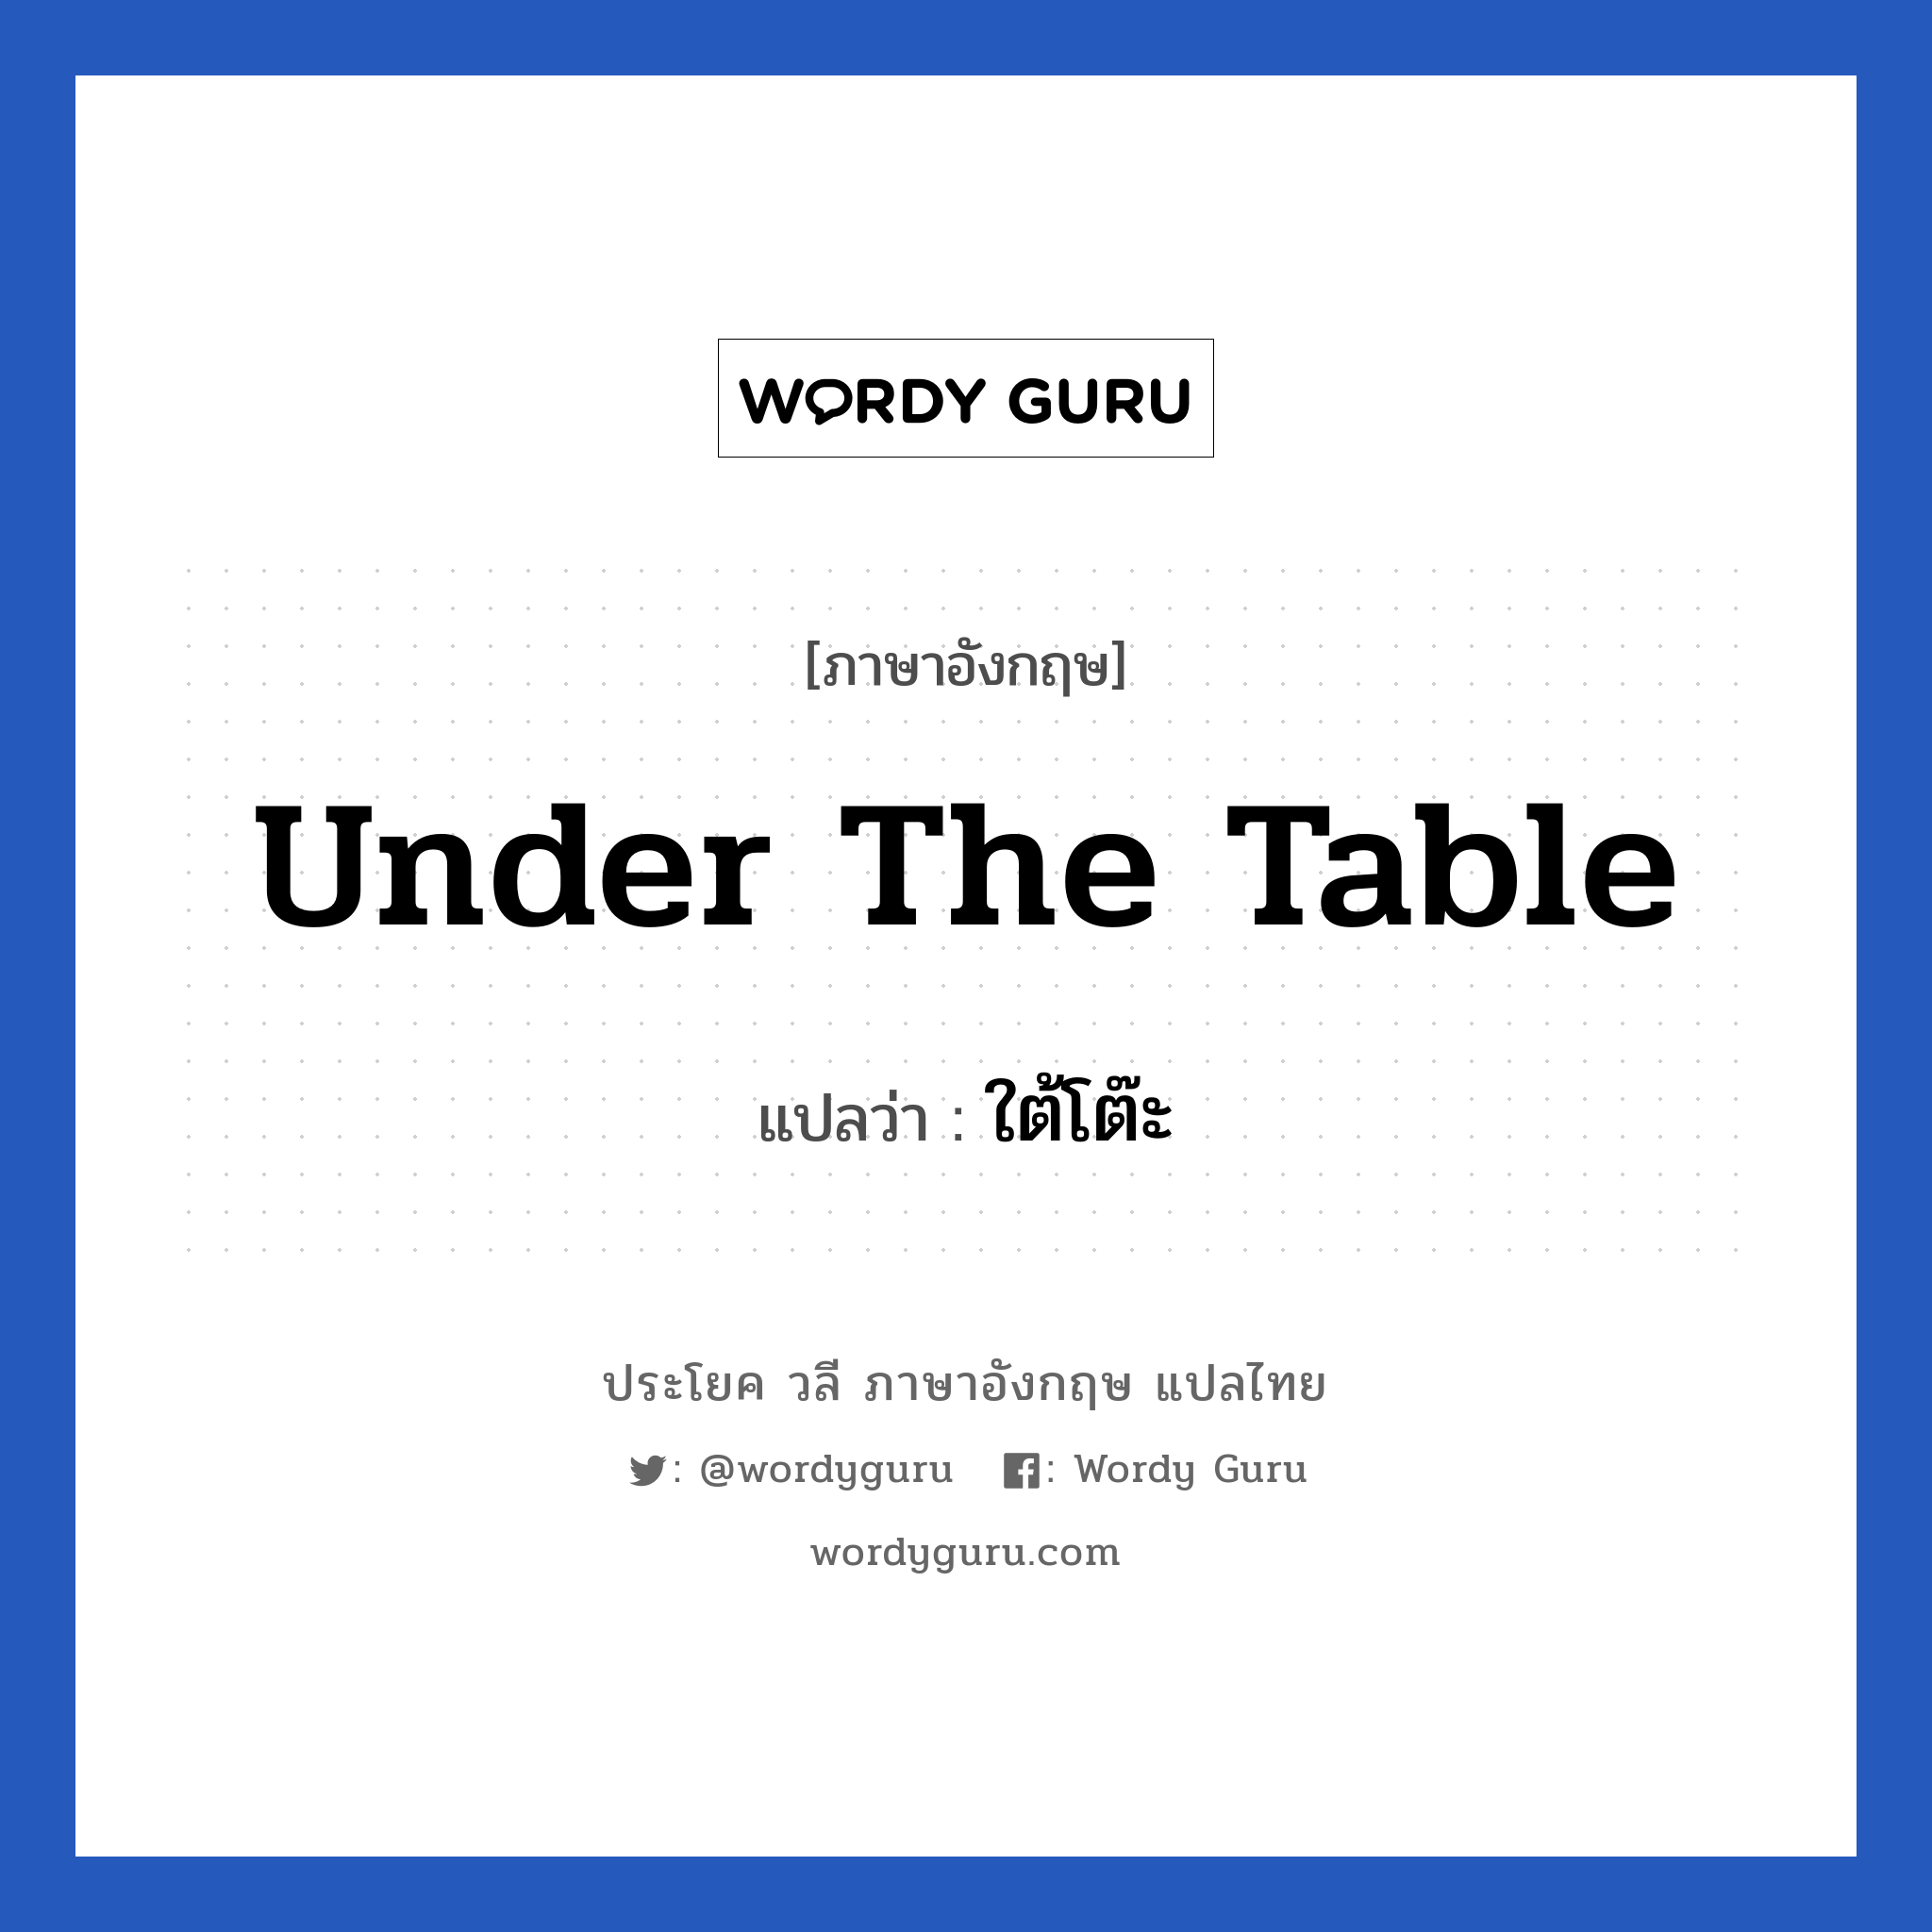 ใต้โต๊ะ ภาษาอังกฤษ?, วลีภาษาอังกฤษ ใต้โต๊ะ แปลว่า Under the table